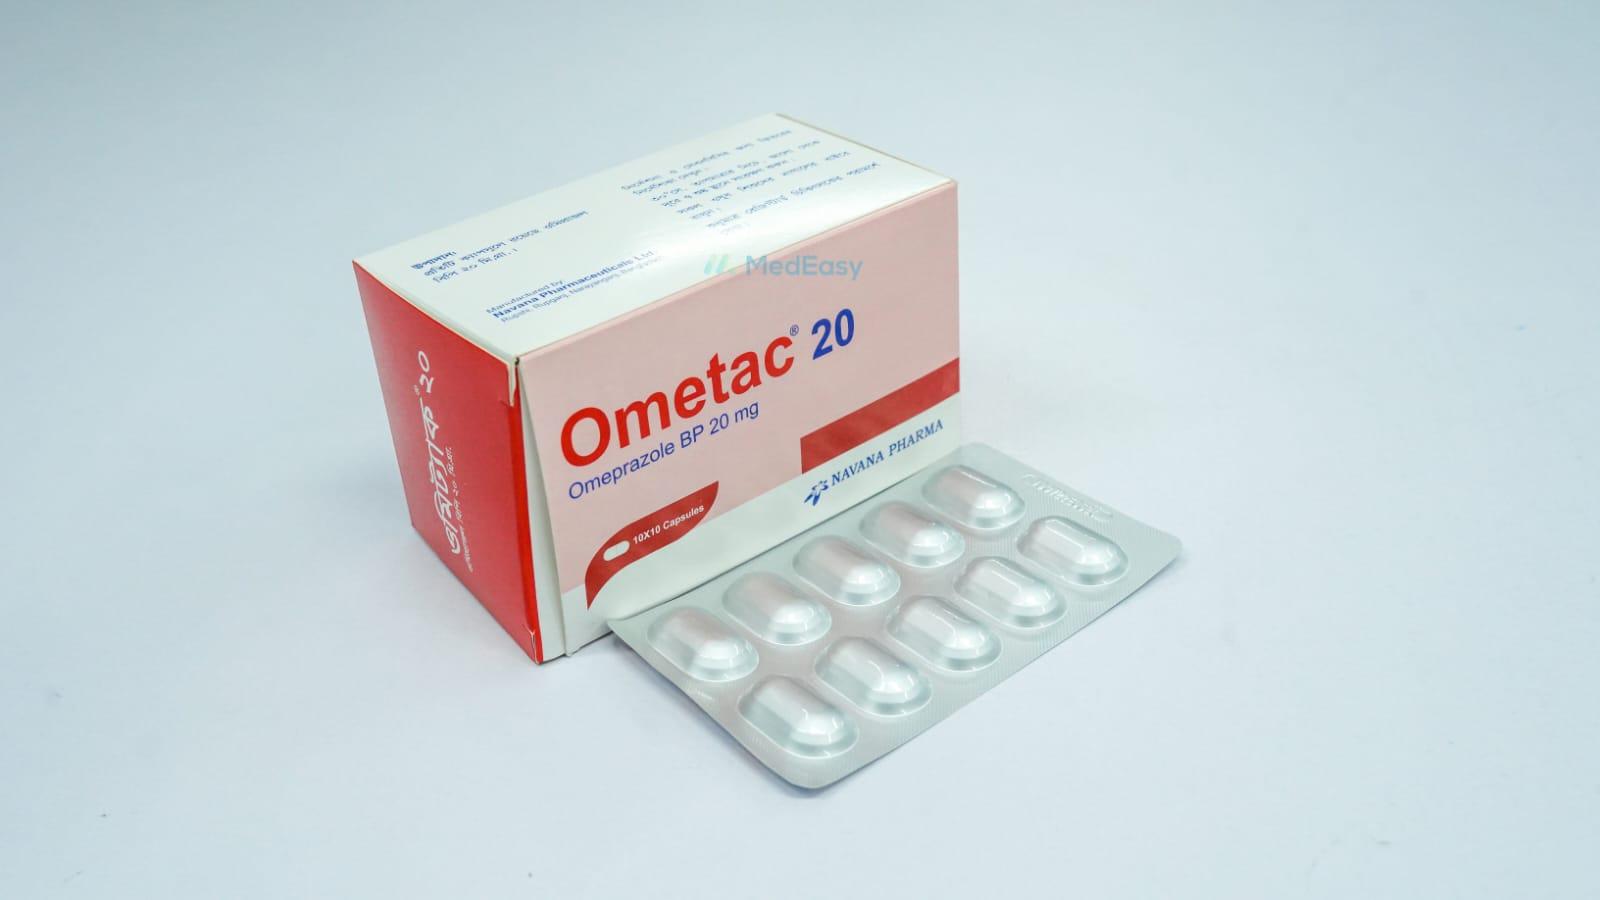 Ometac